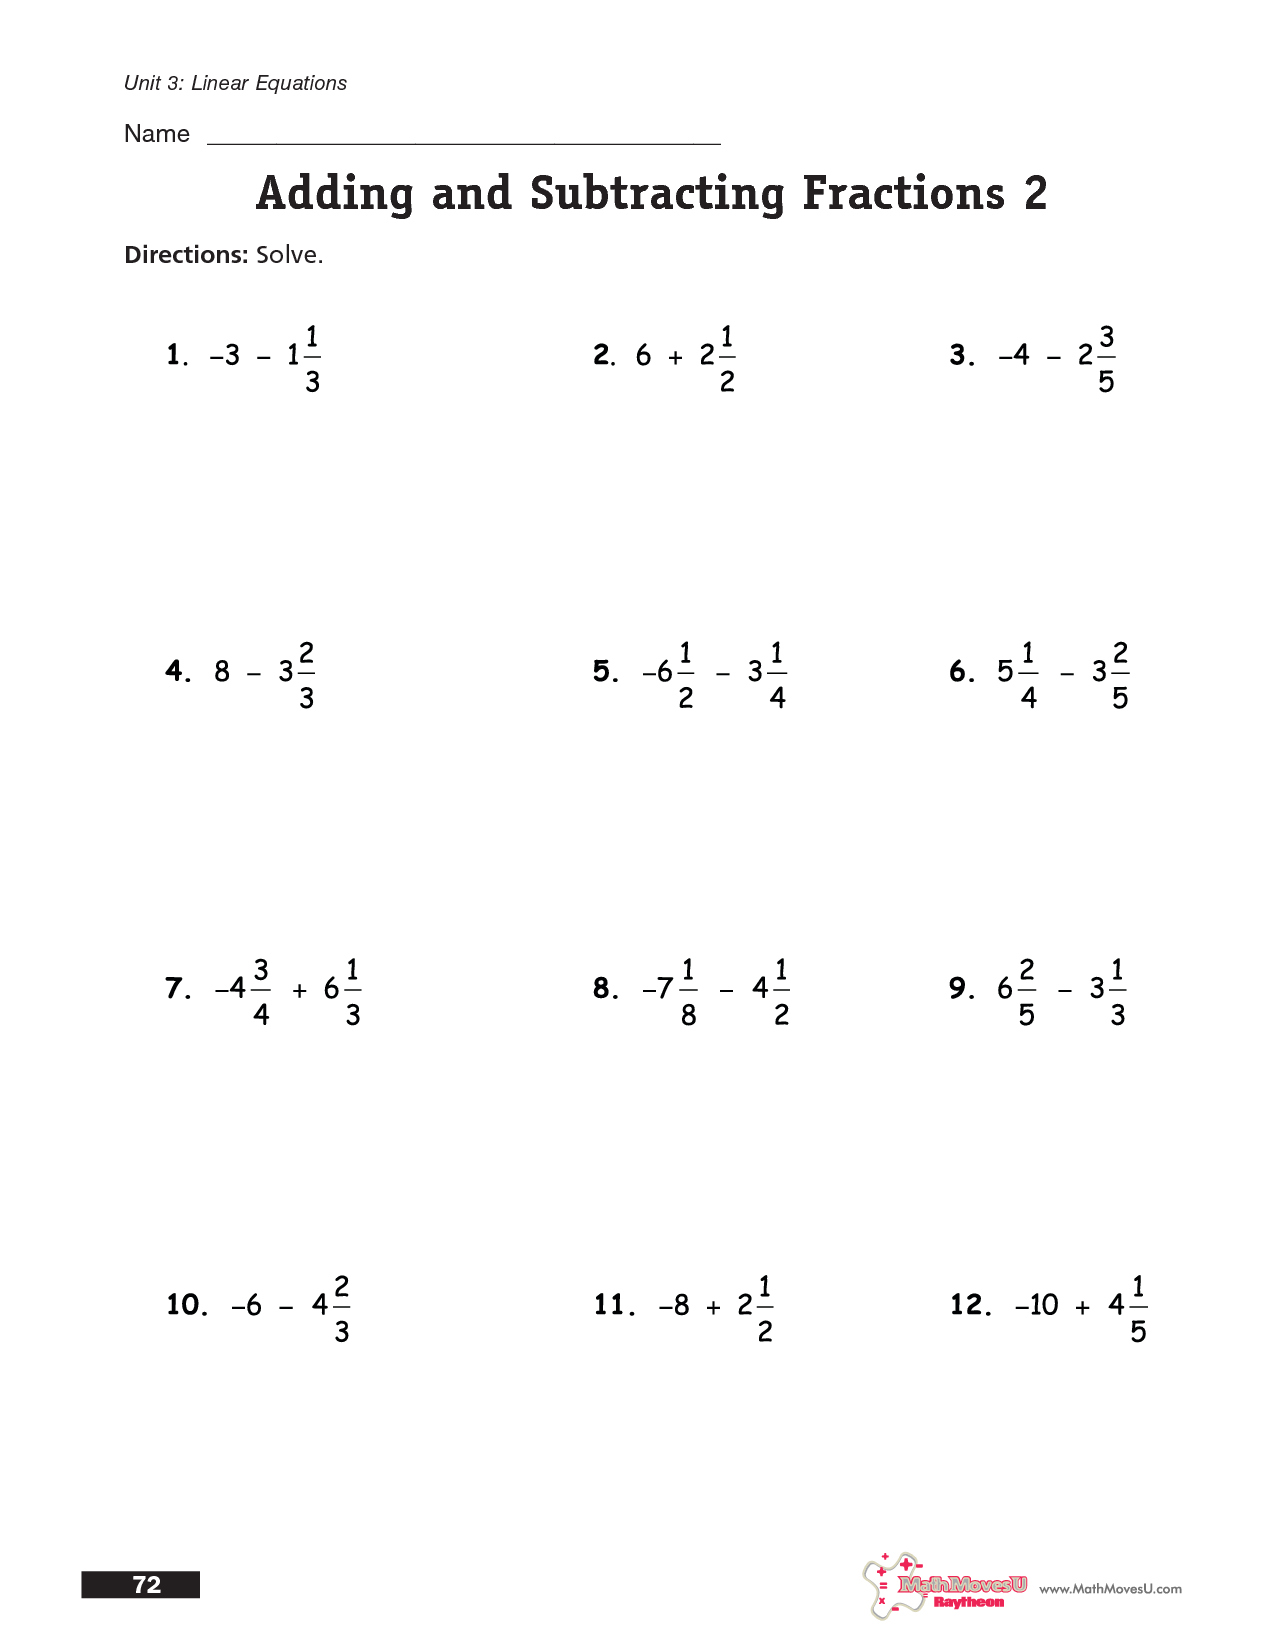 Subtracting Fractions with Unlike Denominators Worksheet